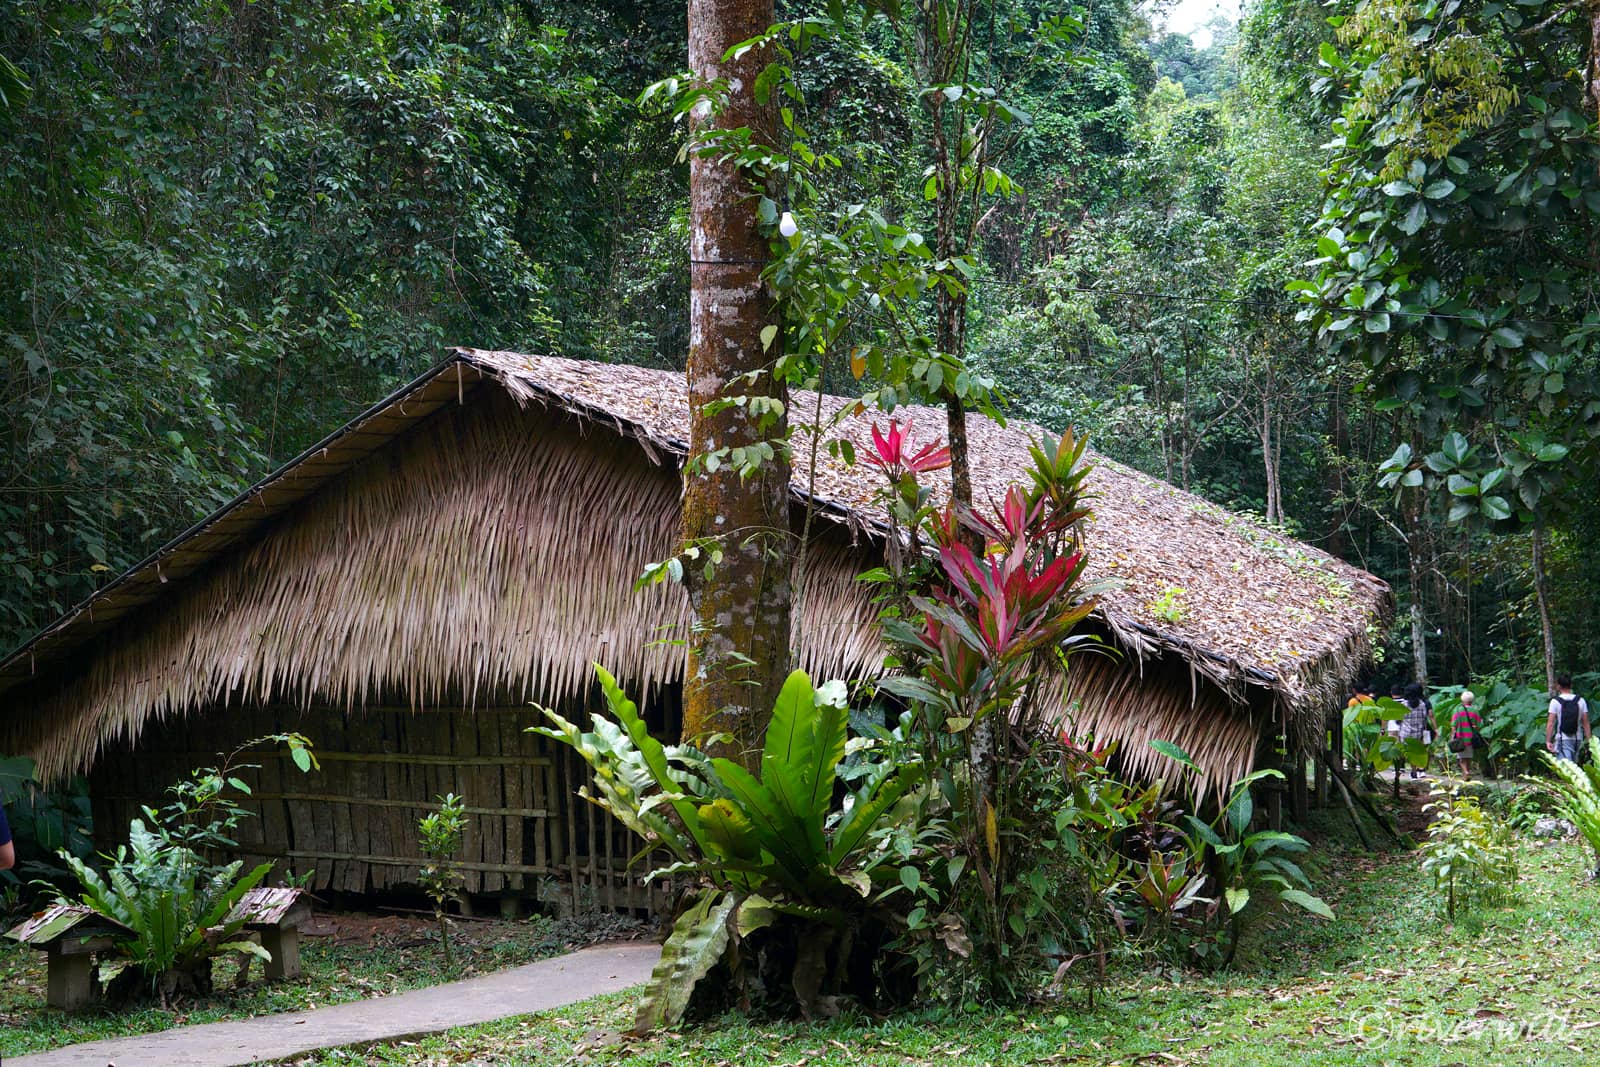 Mari Mari Cultural Village, Kota Kinabalu